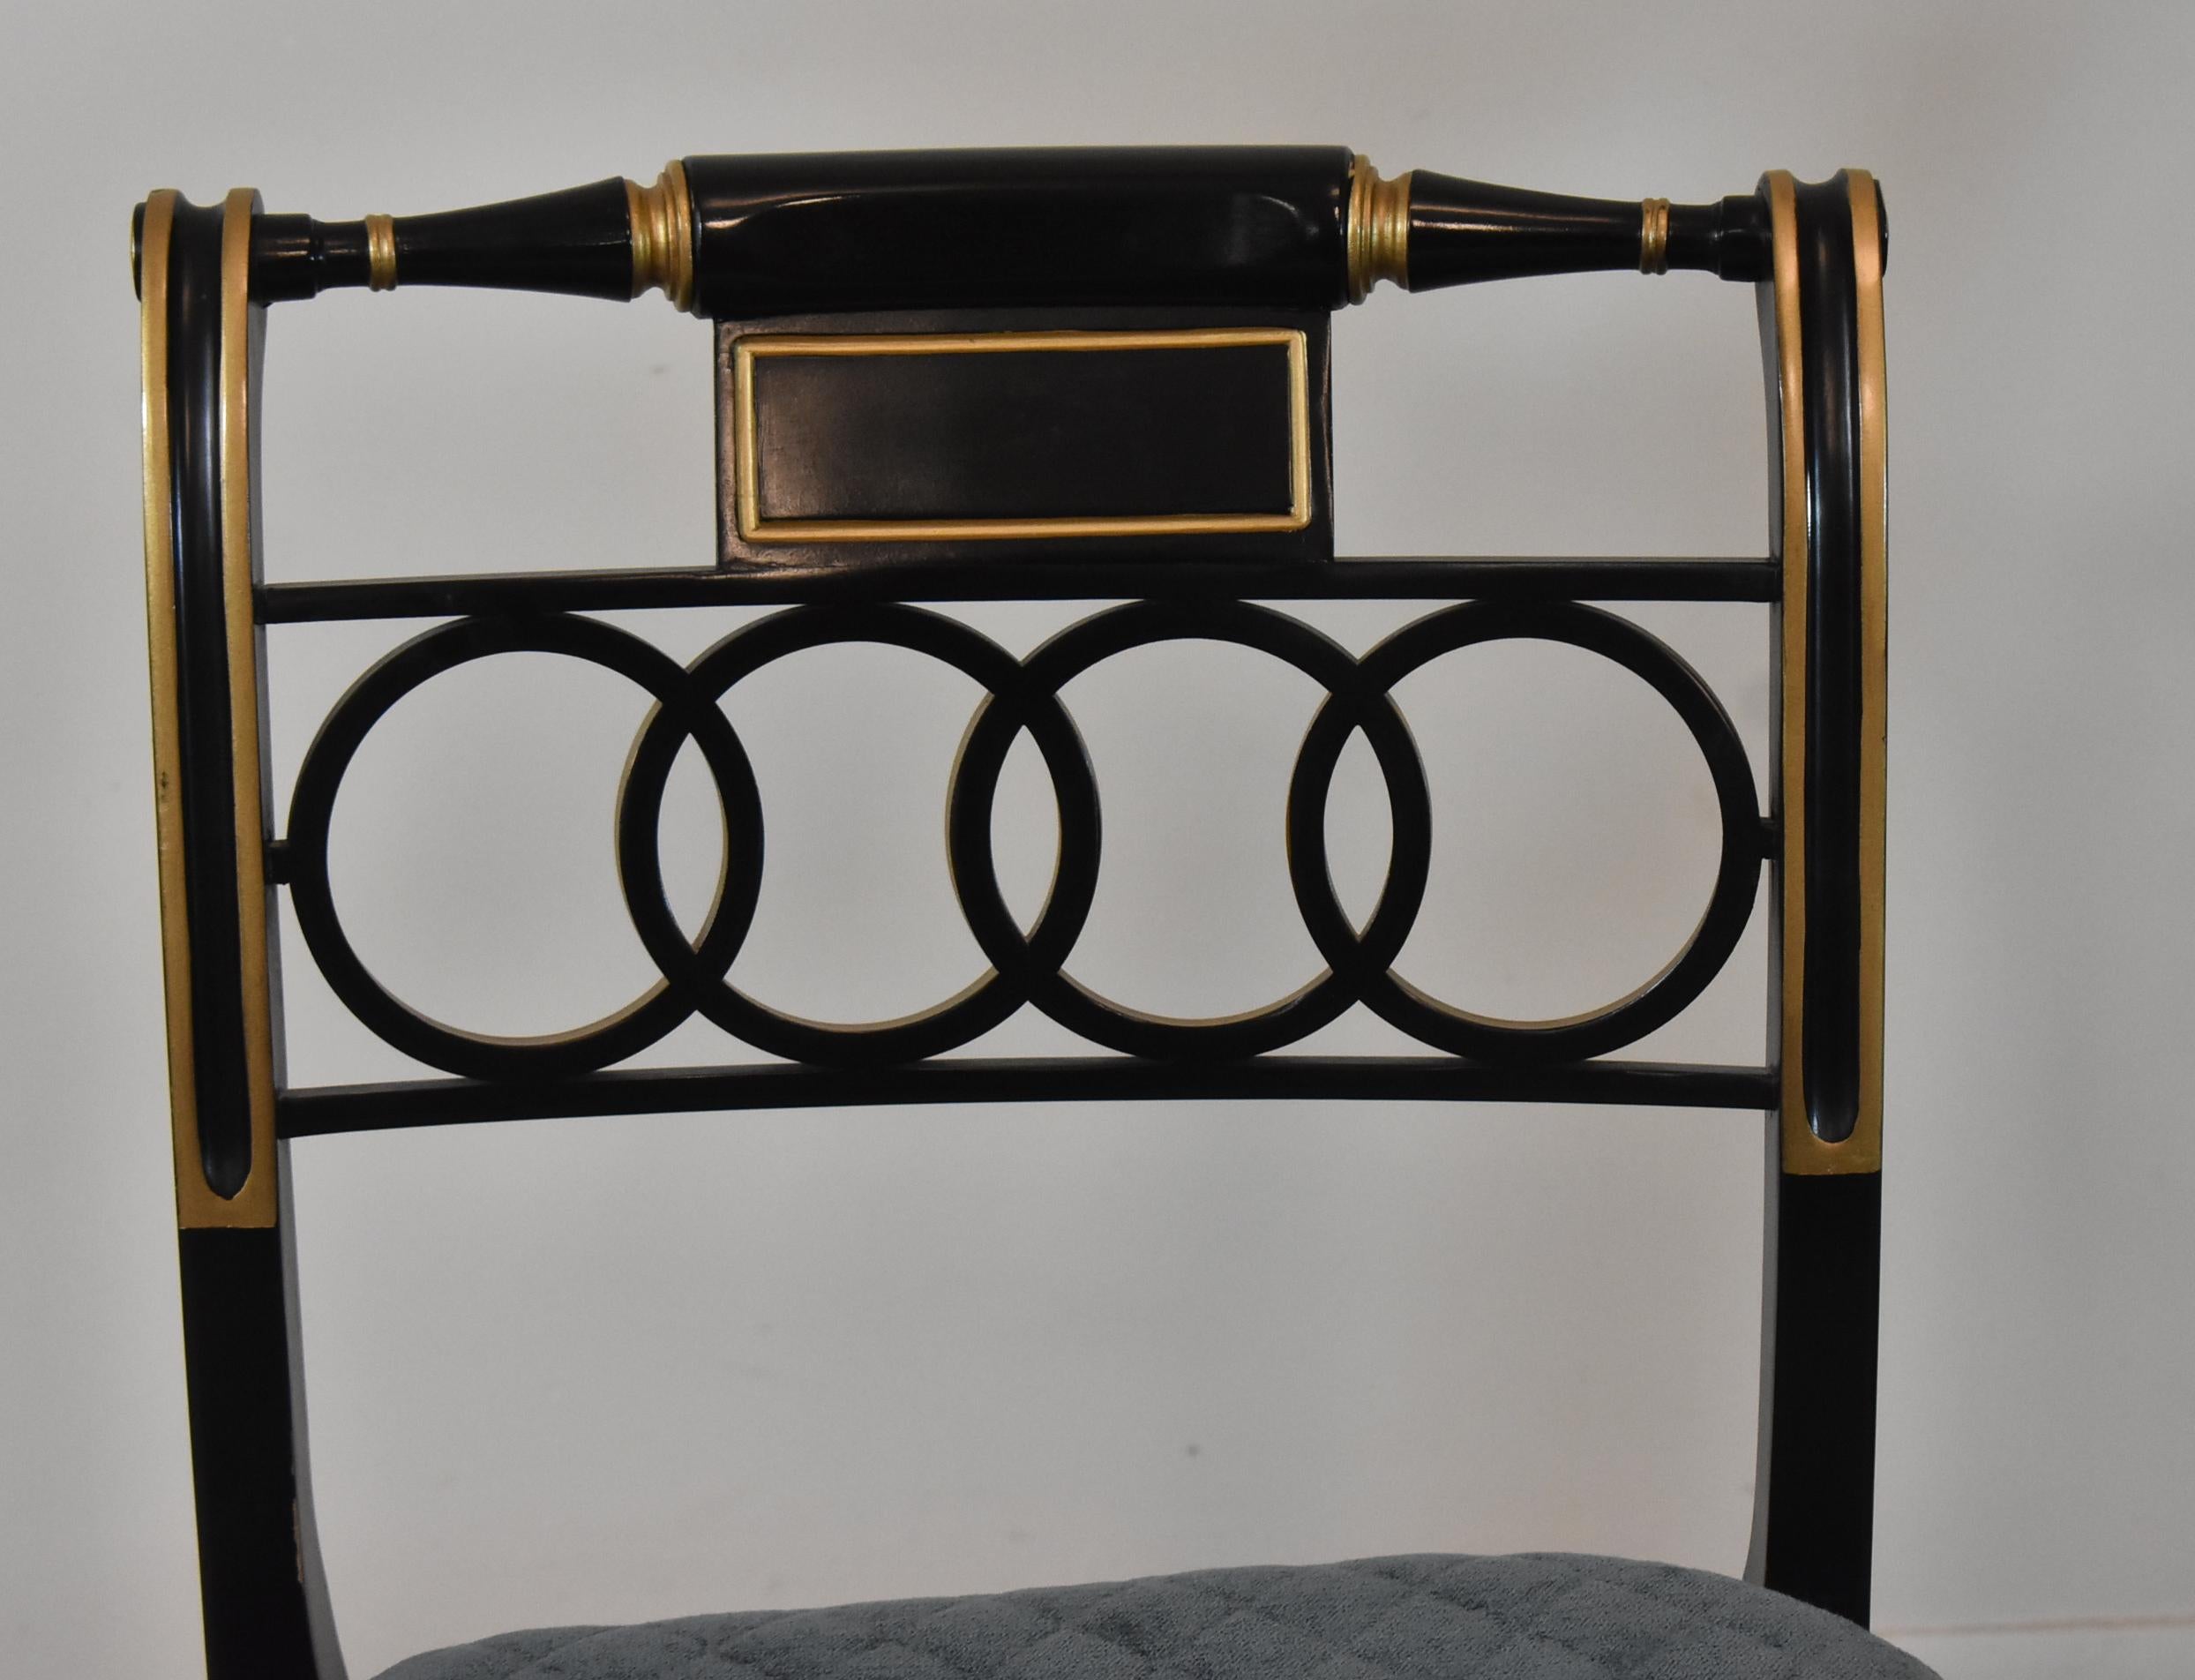 Dieses schöne Paar Stühle im Regency-Stil ist Teil der Baker Historic Charleston Collection'S. Diese Stücke sind in einem ausgezeichneten Vintage-Zustand, schwarz lackiert und mit vergoldeten Details versehen. Der Sitz ist mit optionalen Kissen